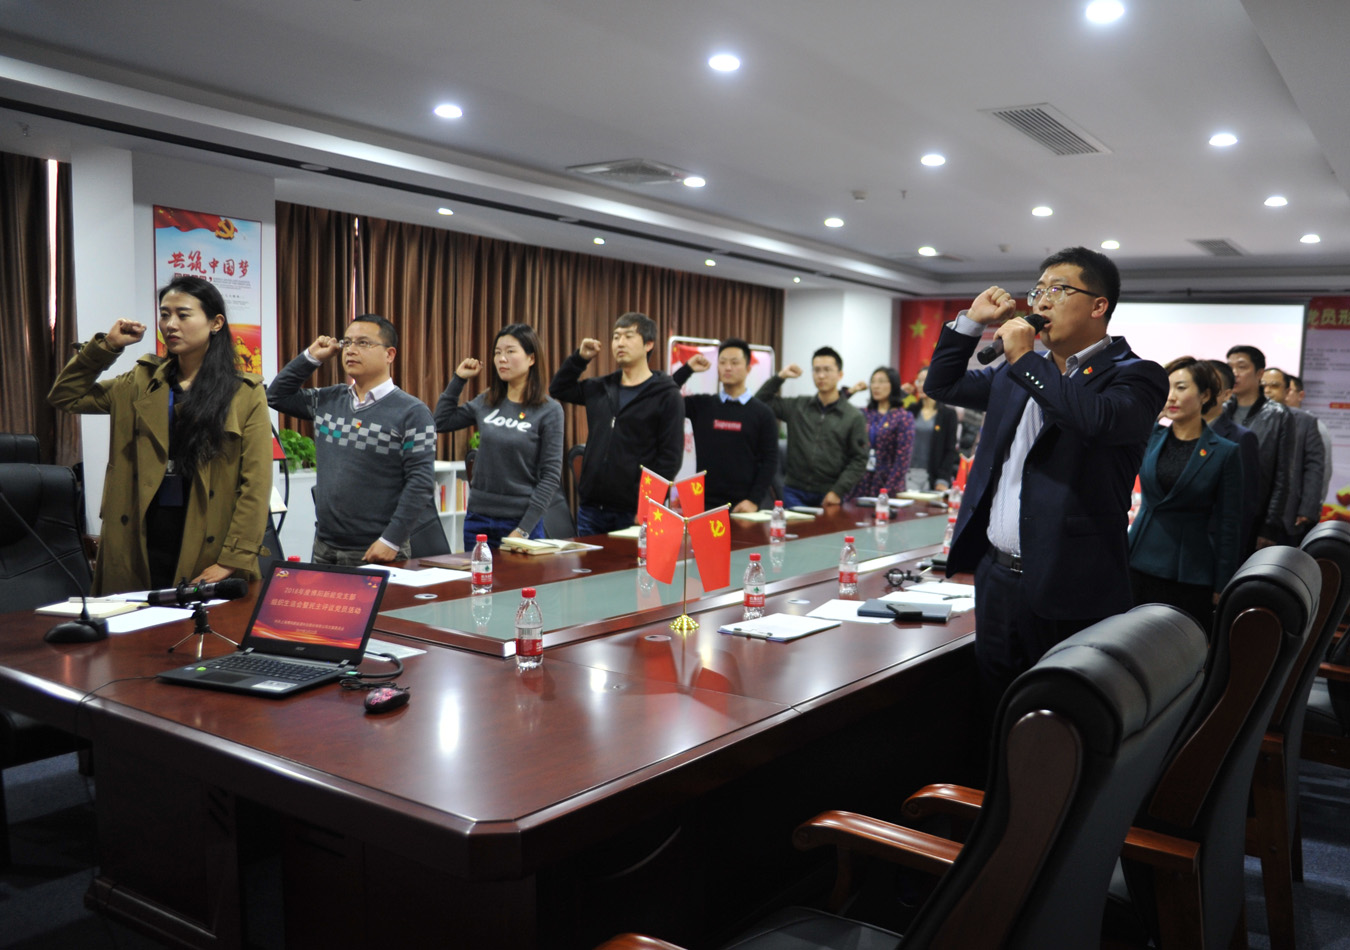 88805tccn新蒲京党支部召开年度组织生活会和民主评议党员活动